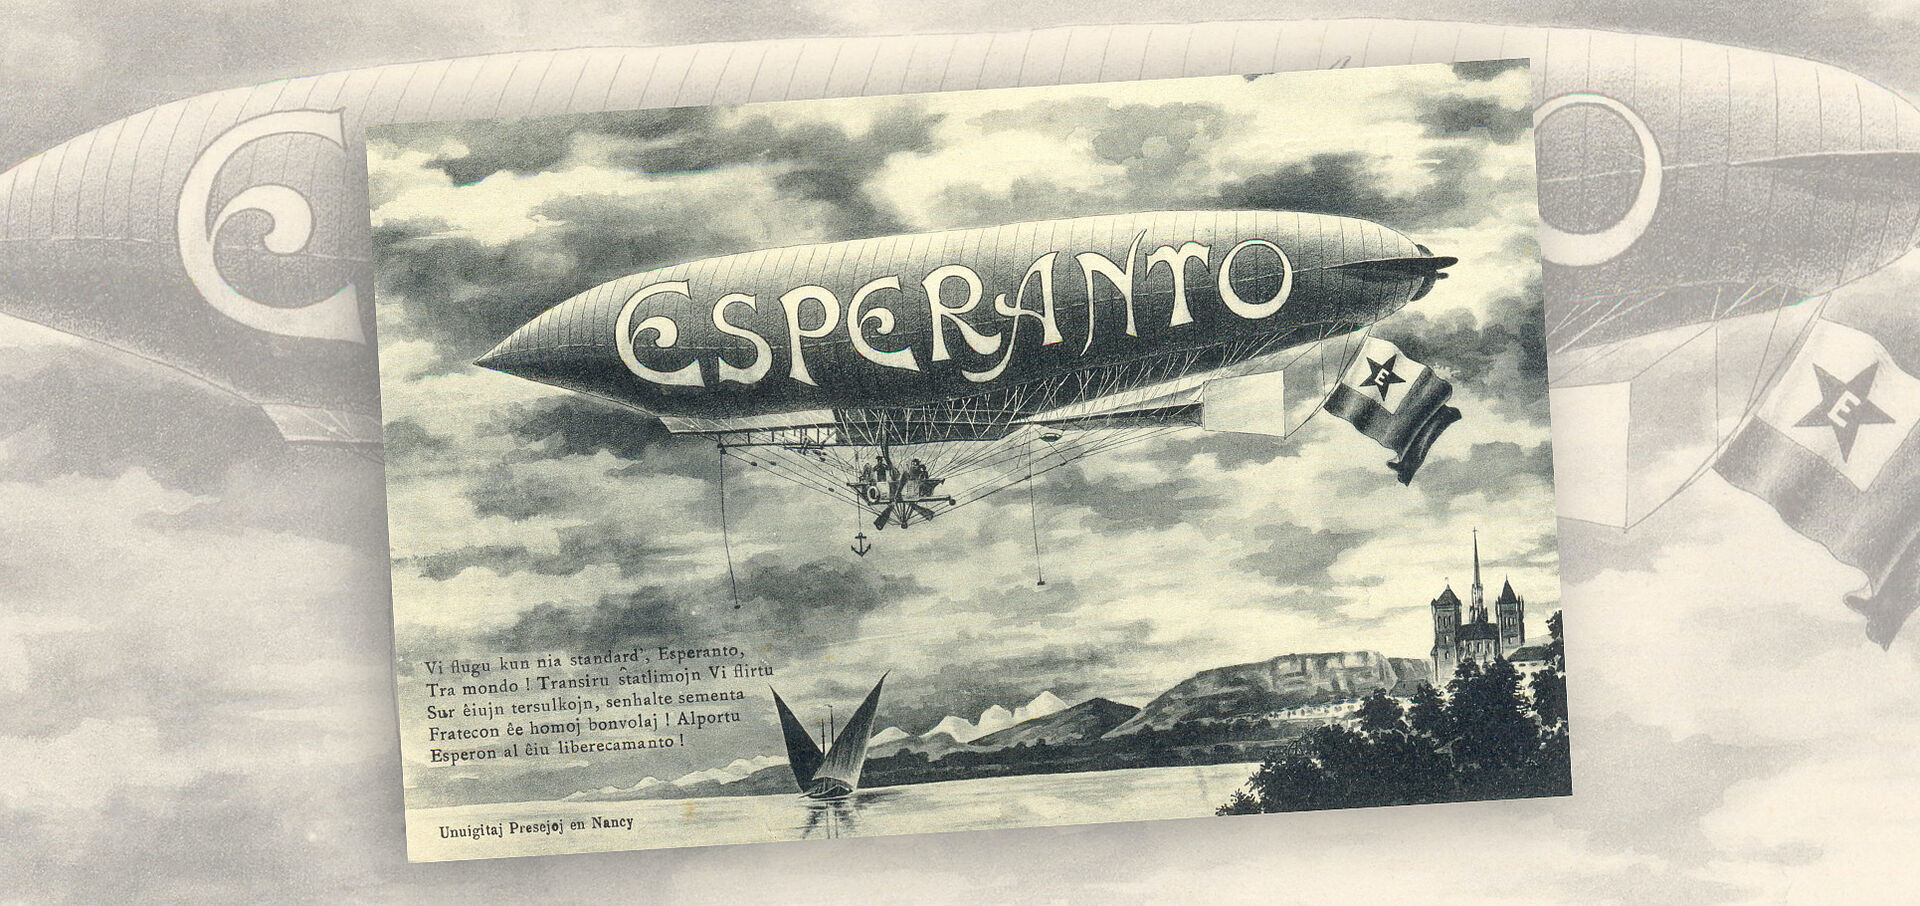 Zeichnung, altmodischer Zeppelin mit Aufschrift "Esperanto"